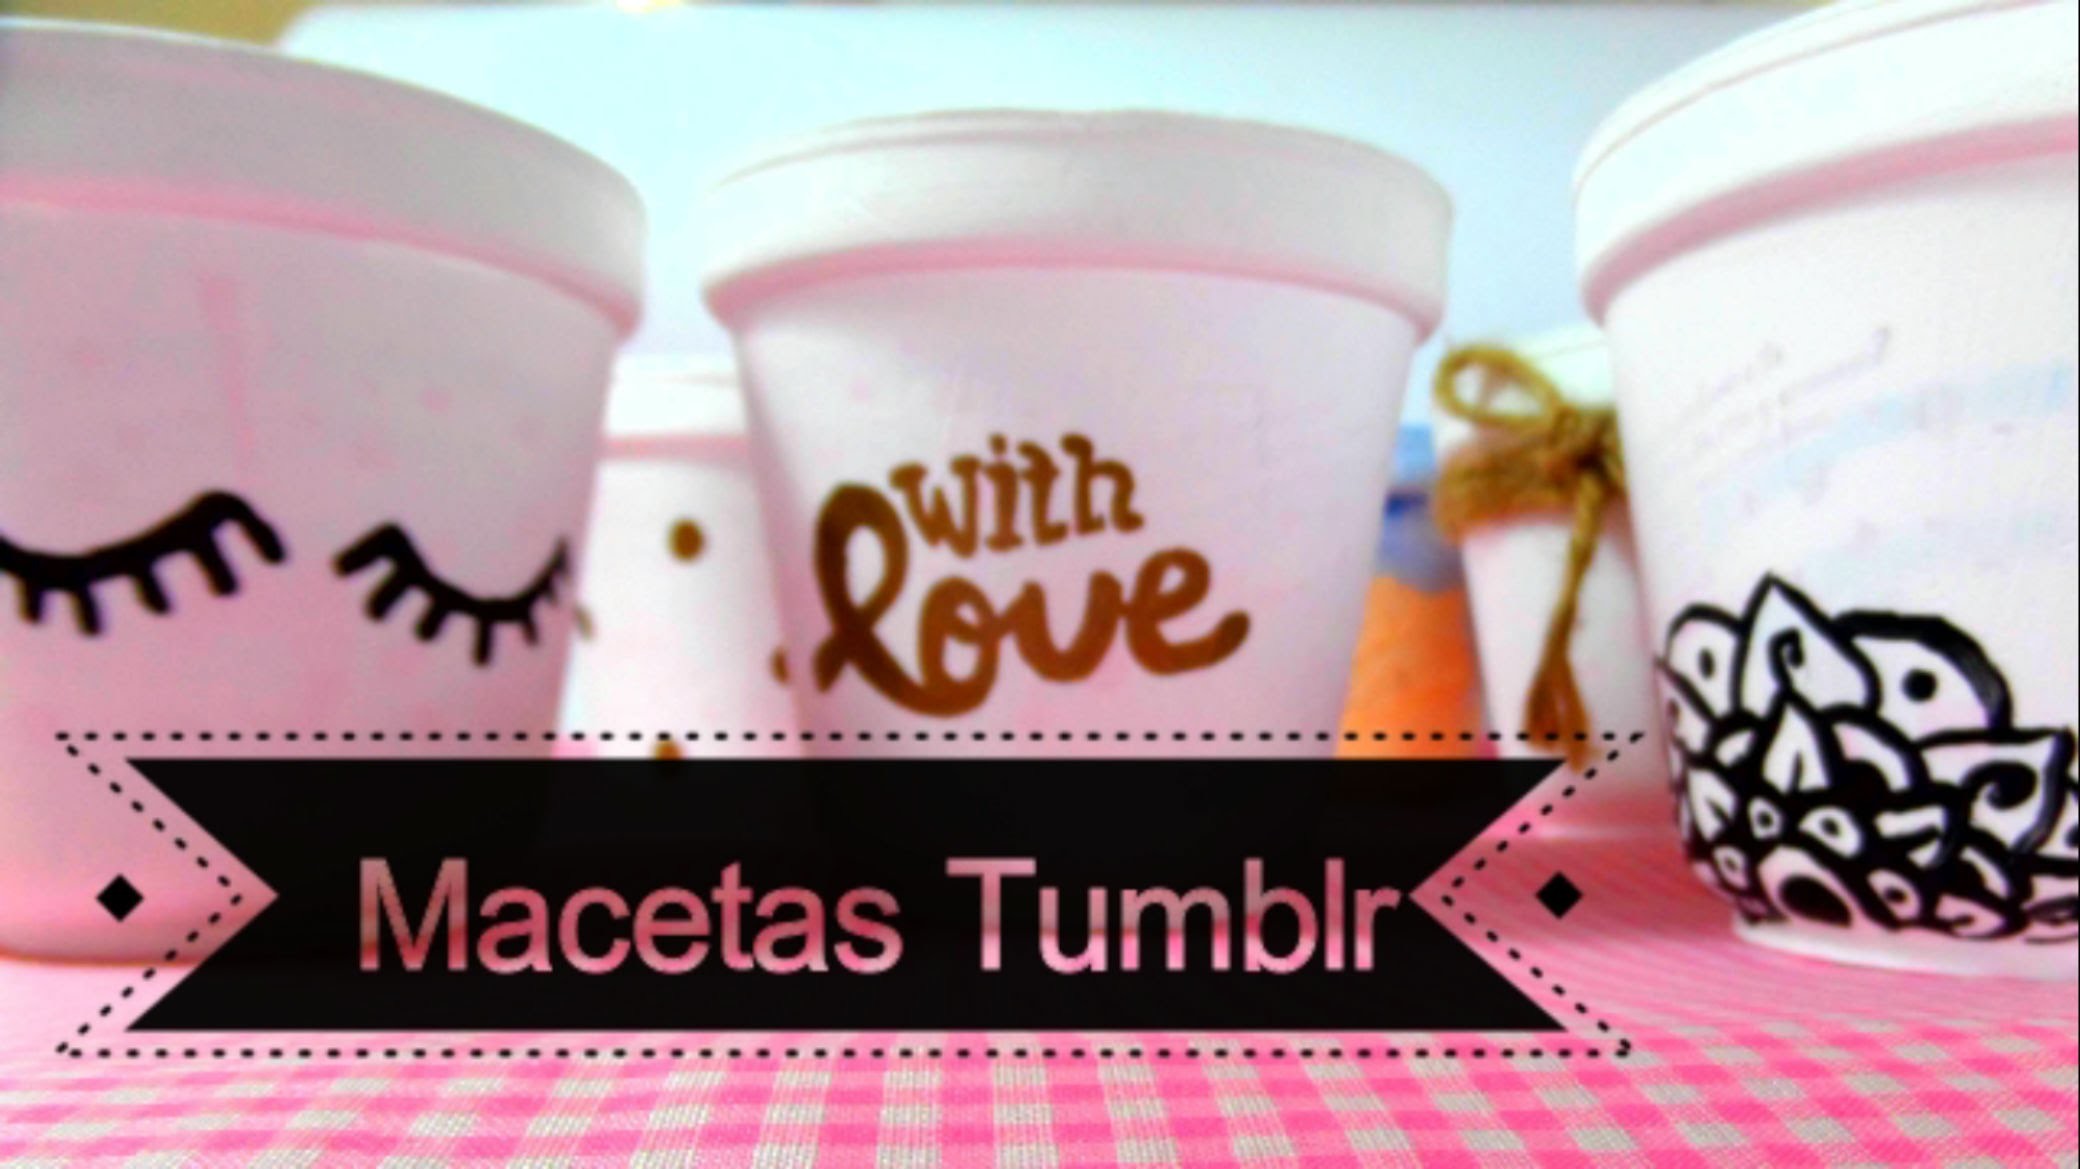 Macetas Tumblr | DIY